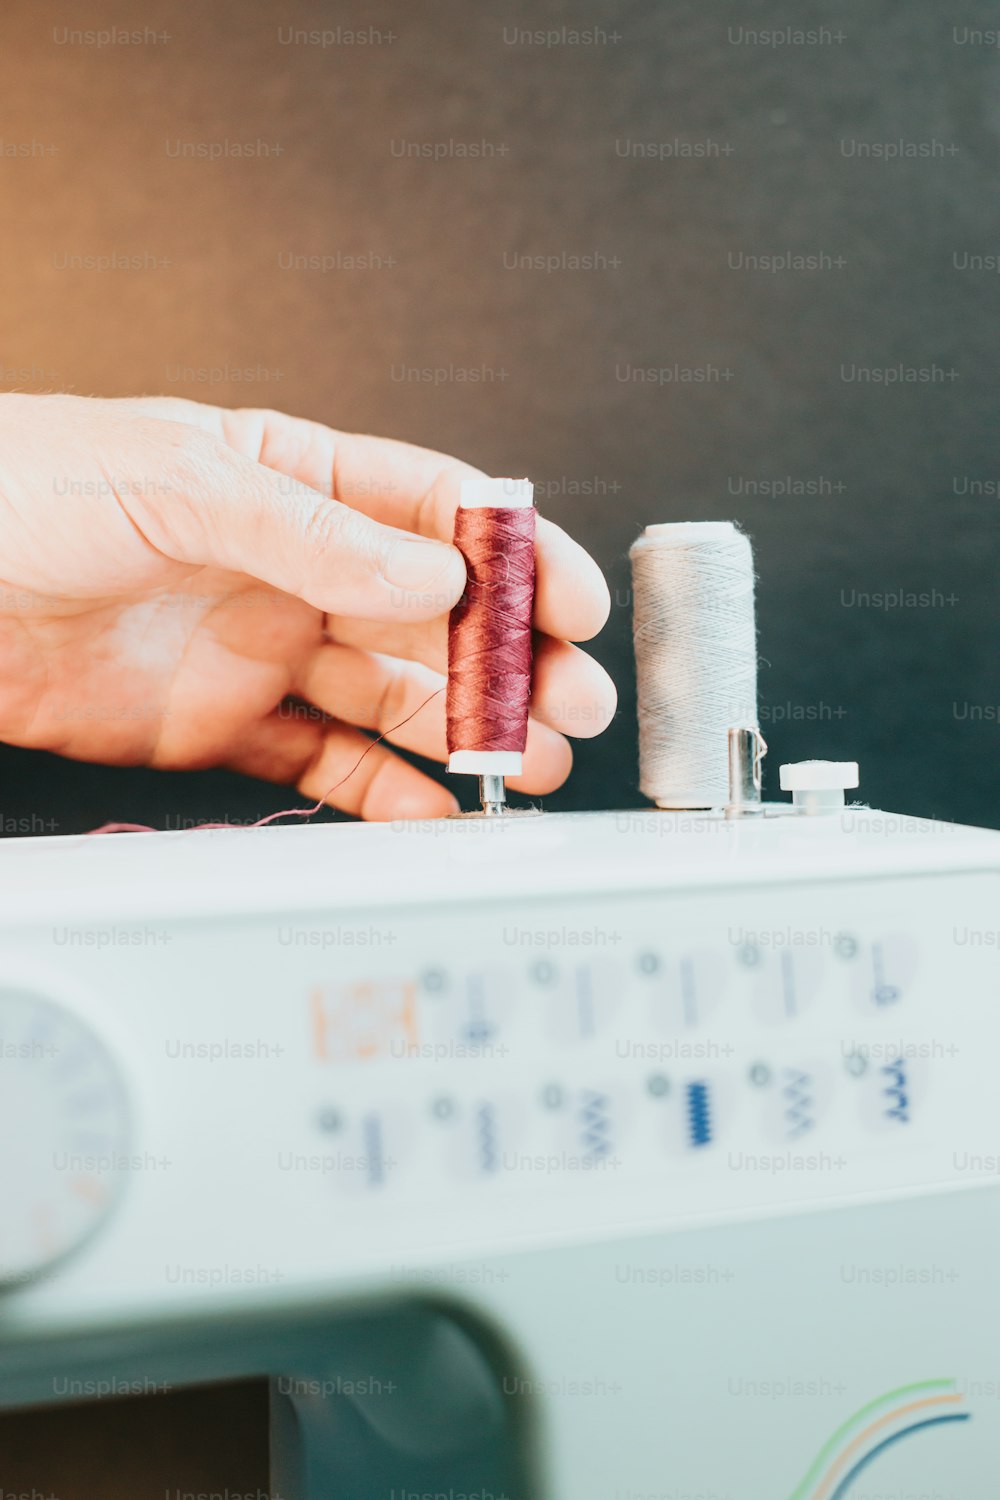 Una persona está cosiendo un trozo de tela en una máquina de coser